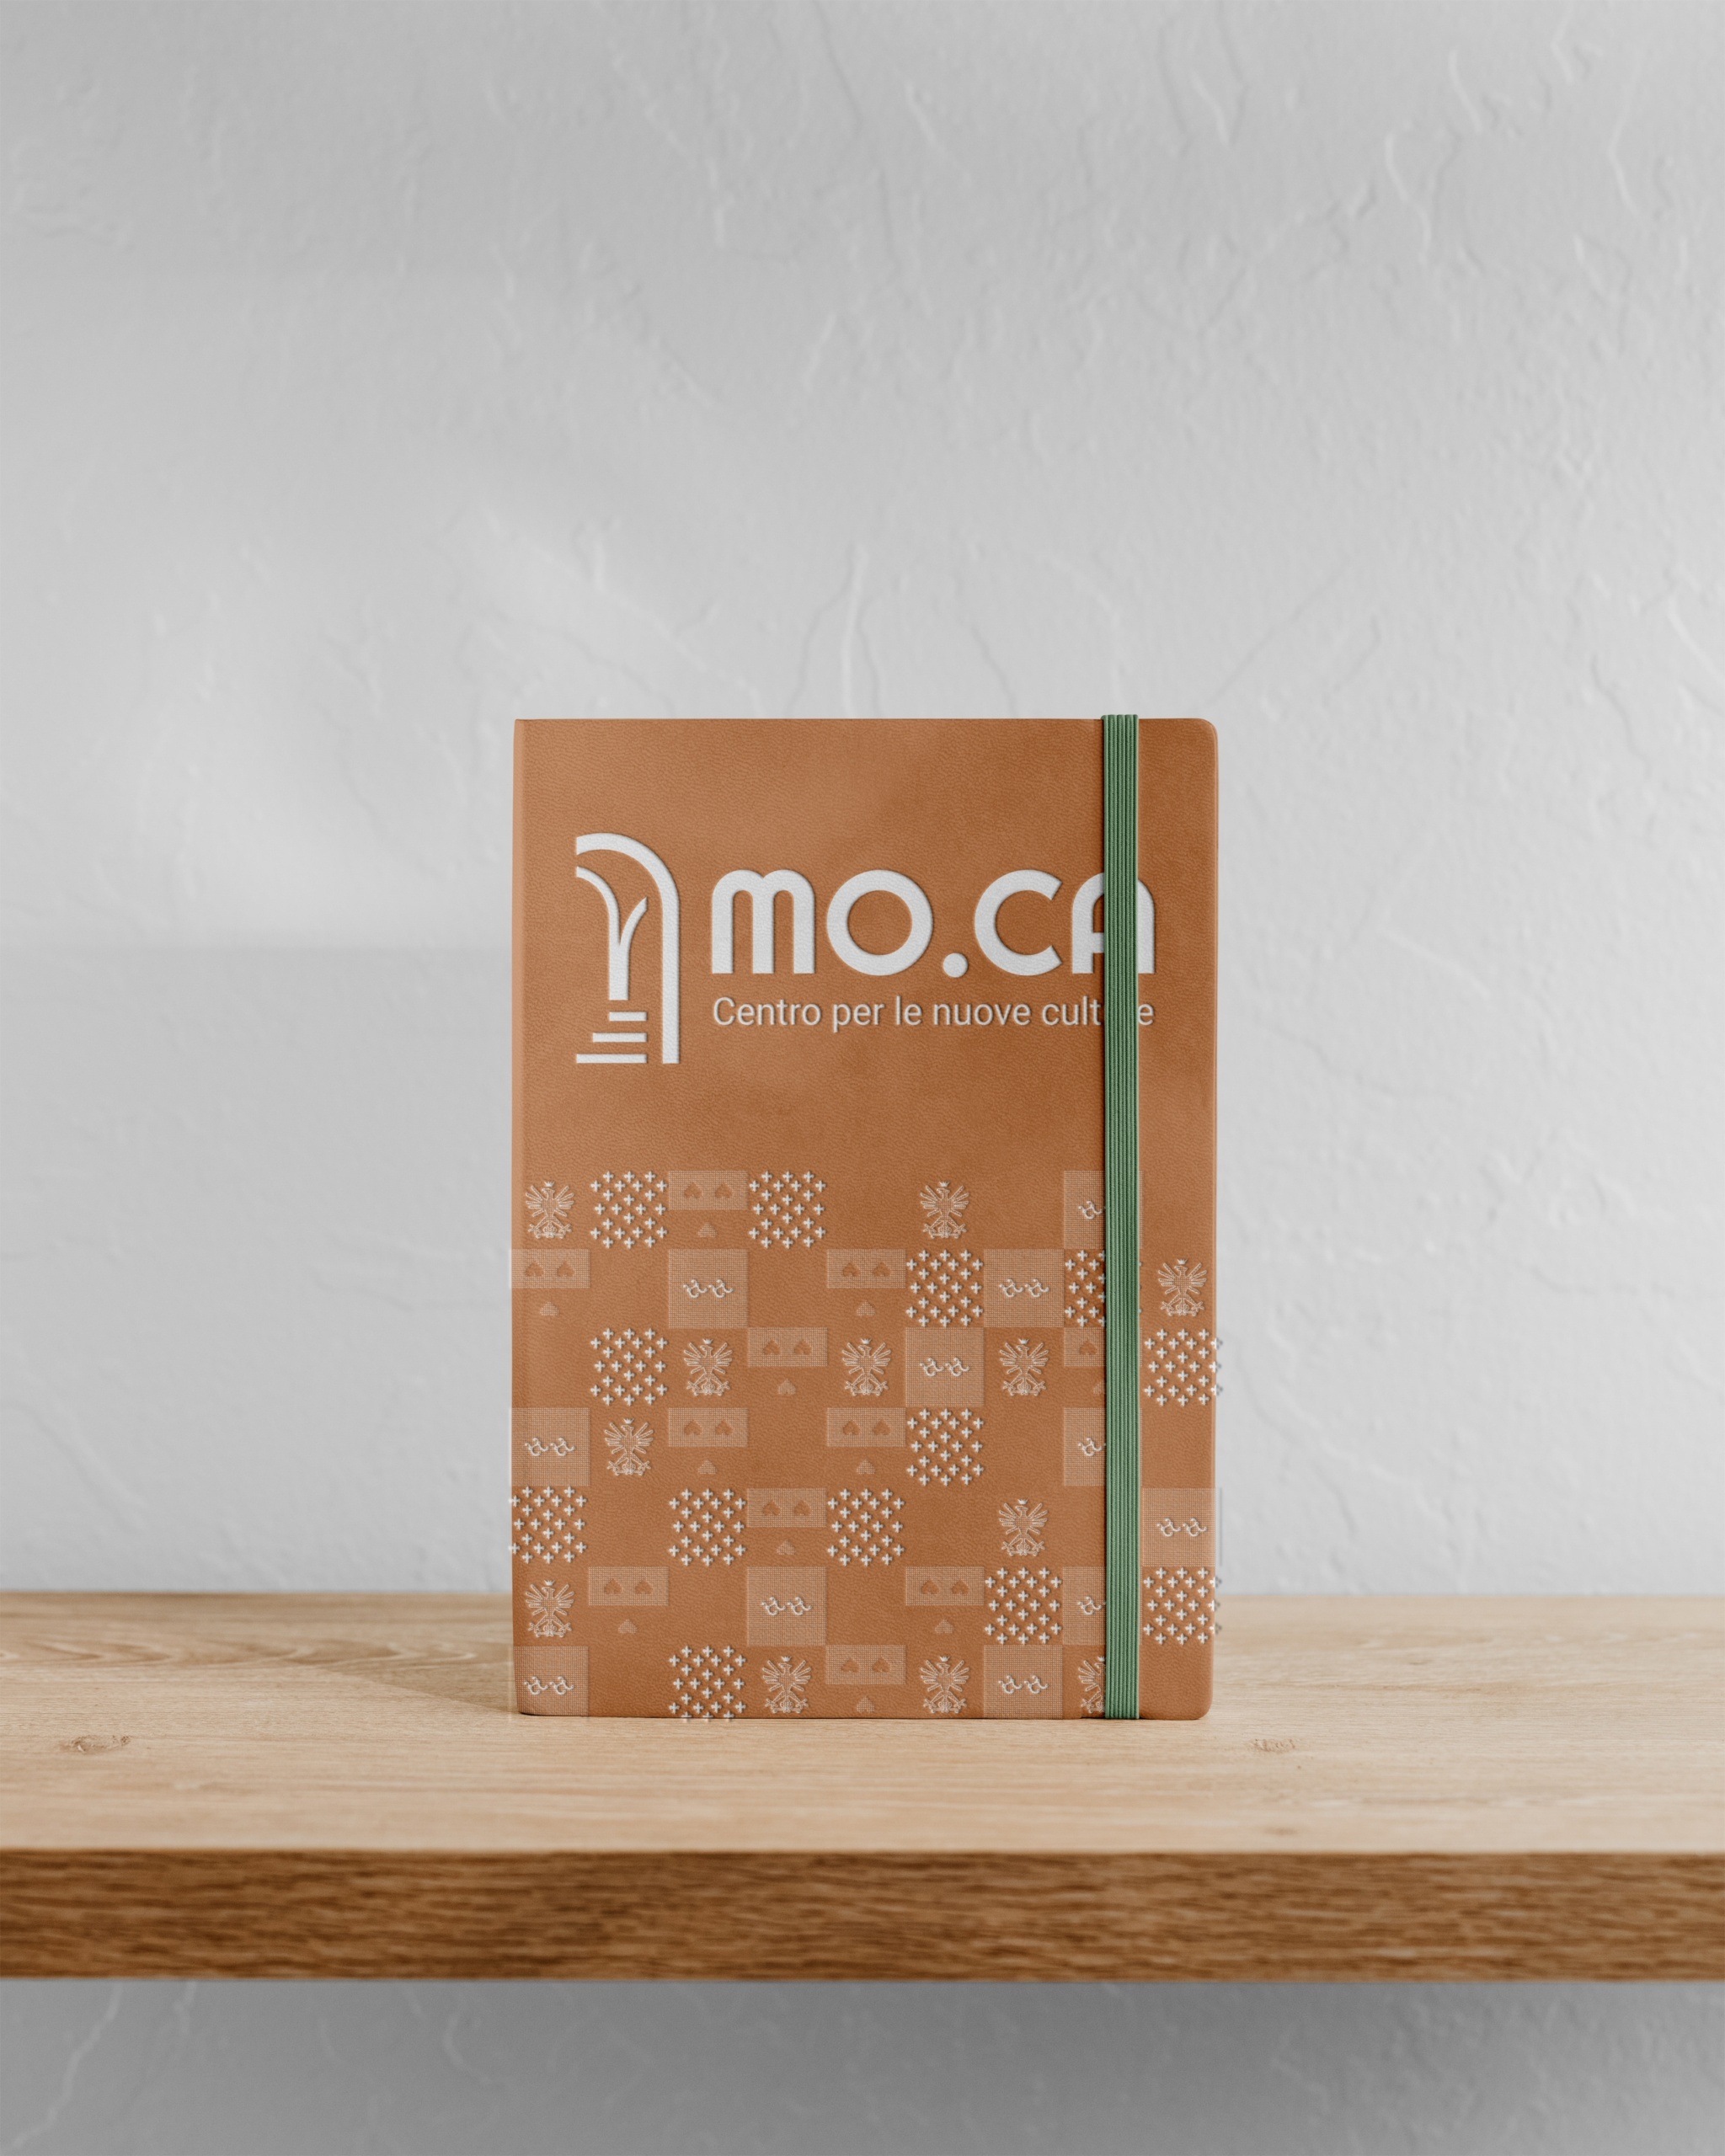 ilacrossbowdesign Notebook Mockup scaled